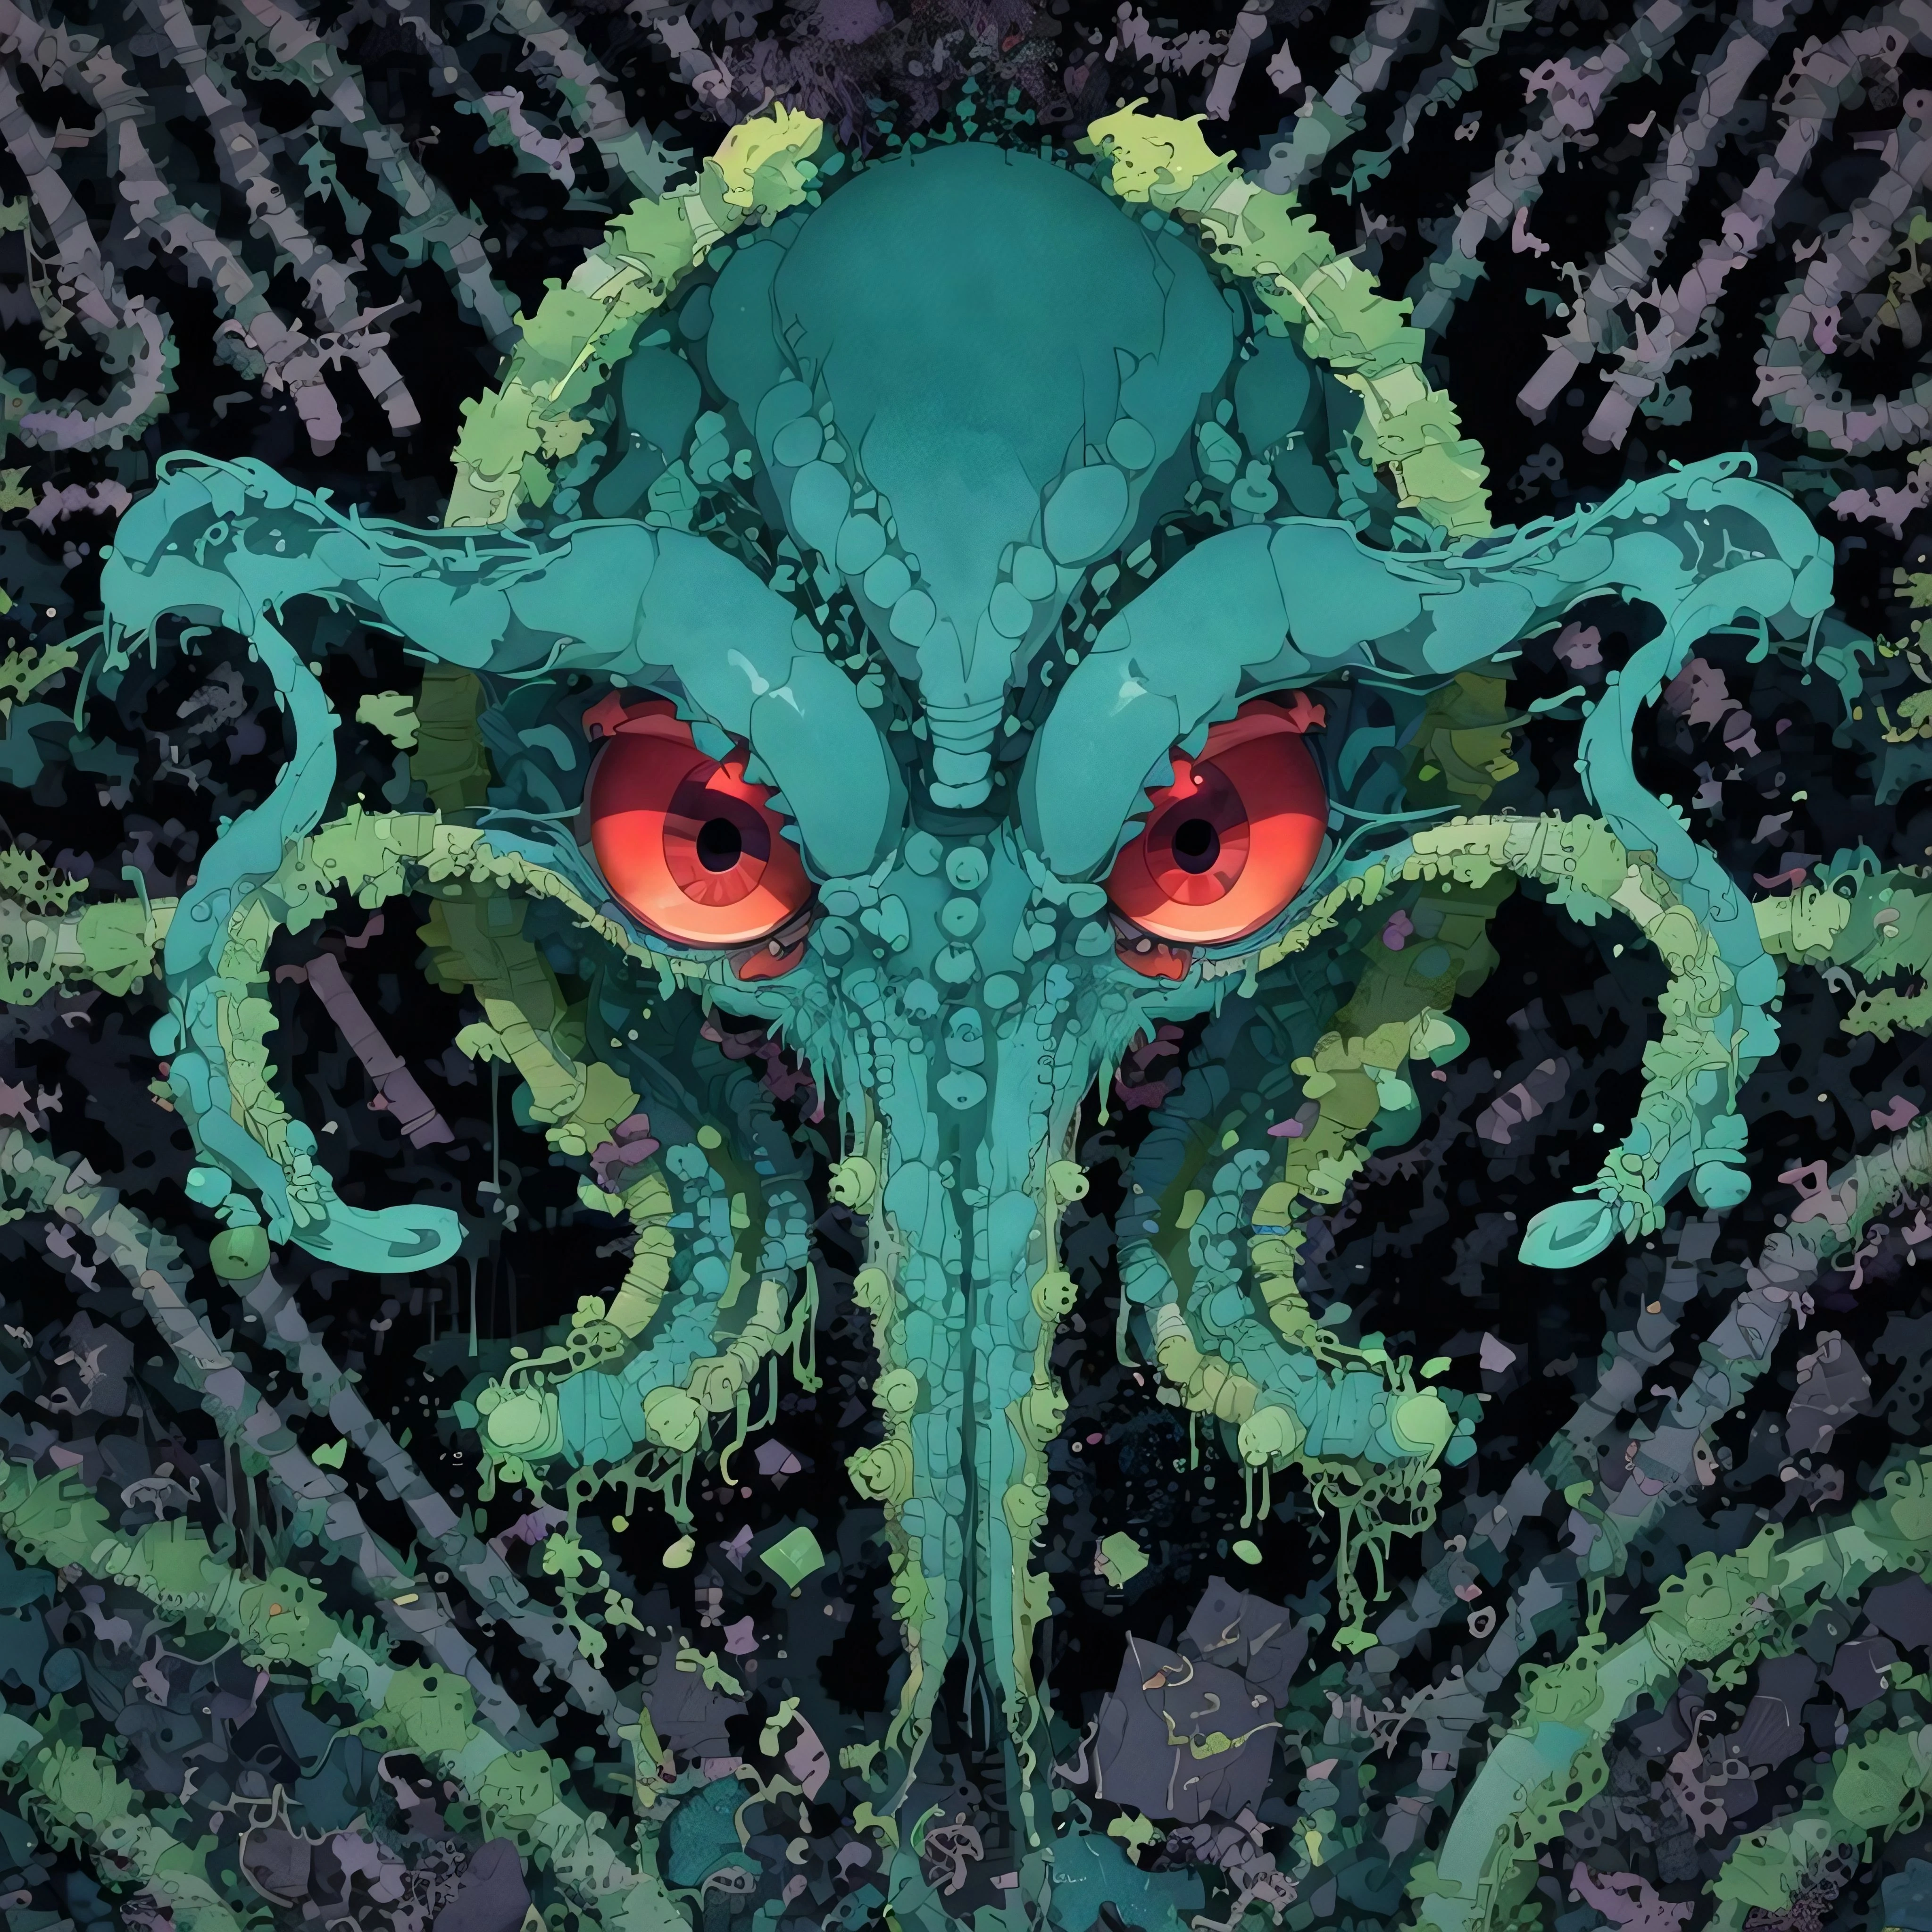 Es gibt einen grünen Oktopus mit roten Augen und Tentakeln, Lovecraftian, Cthulhu, Symbol für eine KI-App, inspiriert von Ken Kelly, Grün-Schwarz-Farbschema, Buchcover „Gänsehaut“, inspiriert von Edwin Dickinson, Magie, dunkles Blaugrün, Anzeigenbild, Kessel, Er ist wütend, Meisterwerk, ausführlich, preisgekrönt  